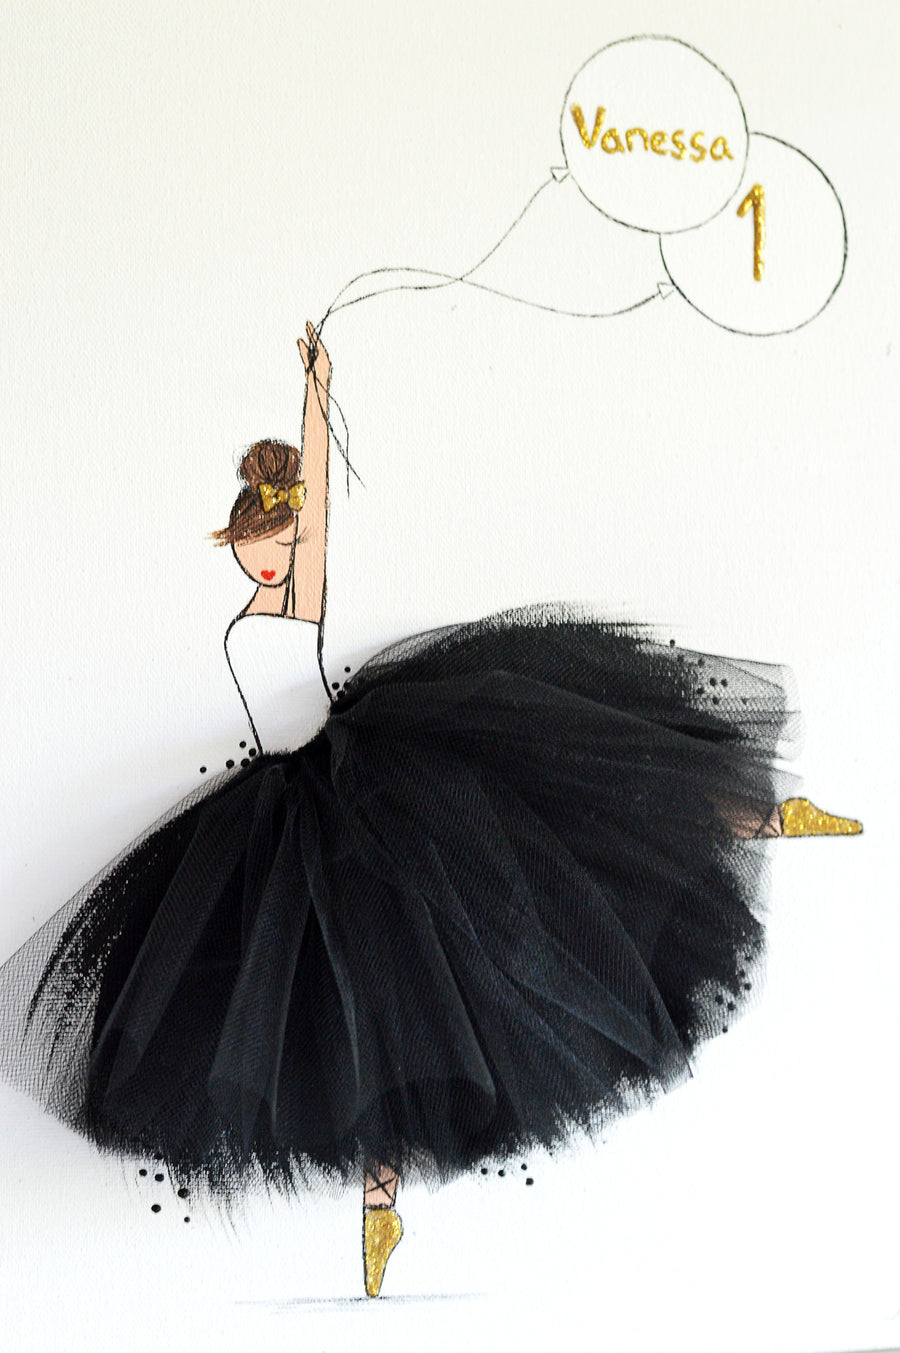 personalized nursery decor - ballerina canvas art with balloon - shenasi concept